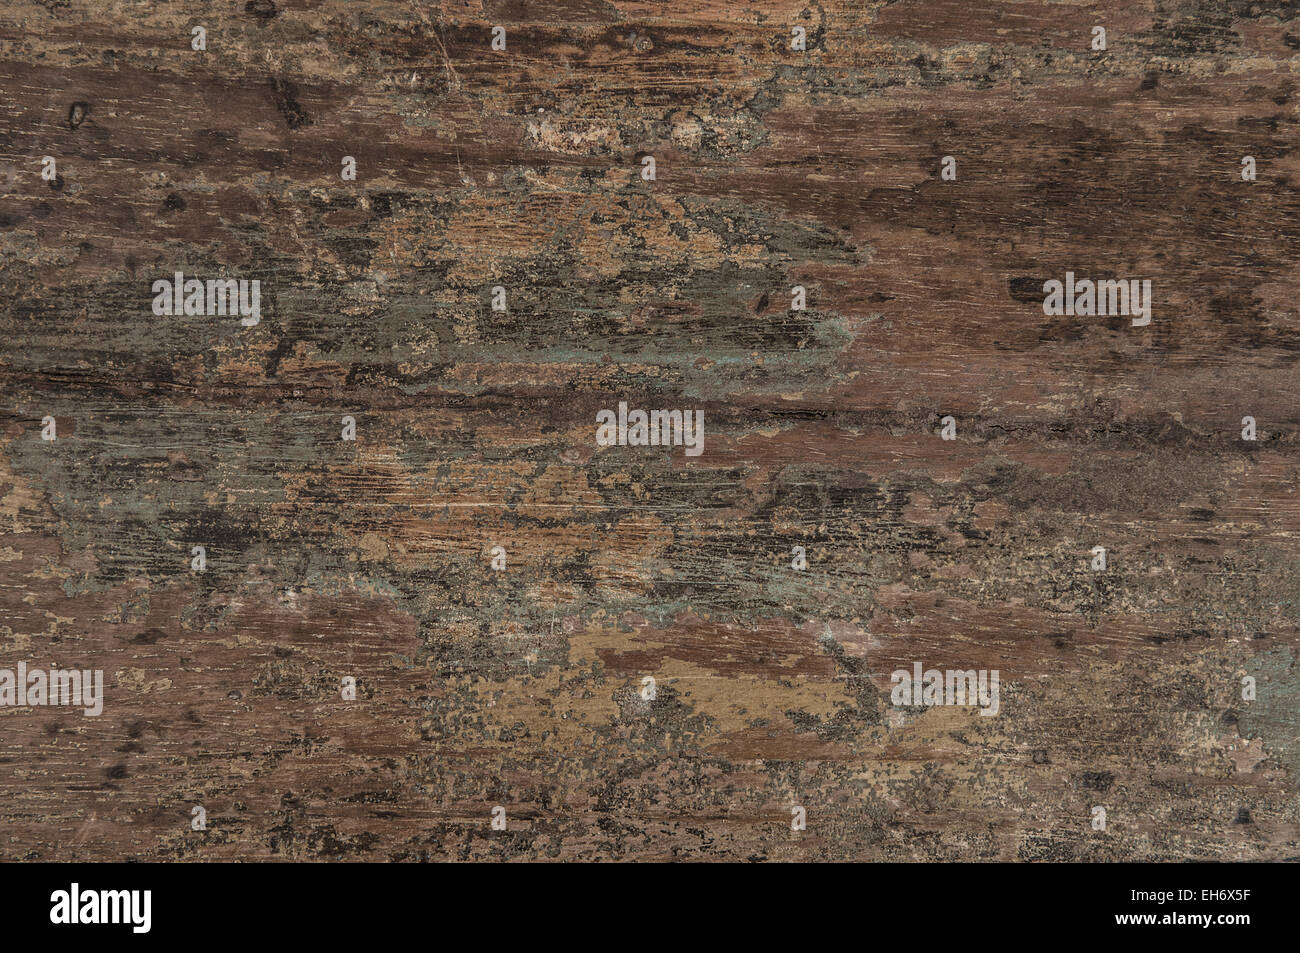 Vintage Holzplatte Hintergrund. Rustikale Holzstruktur wohnhaft. Verwendete Tapete Stockfoto